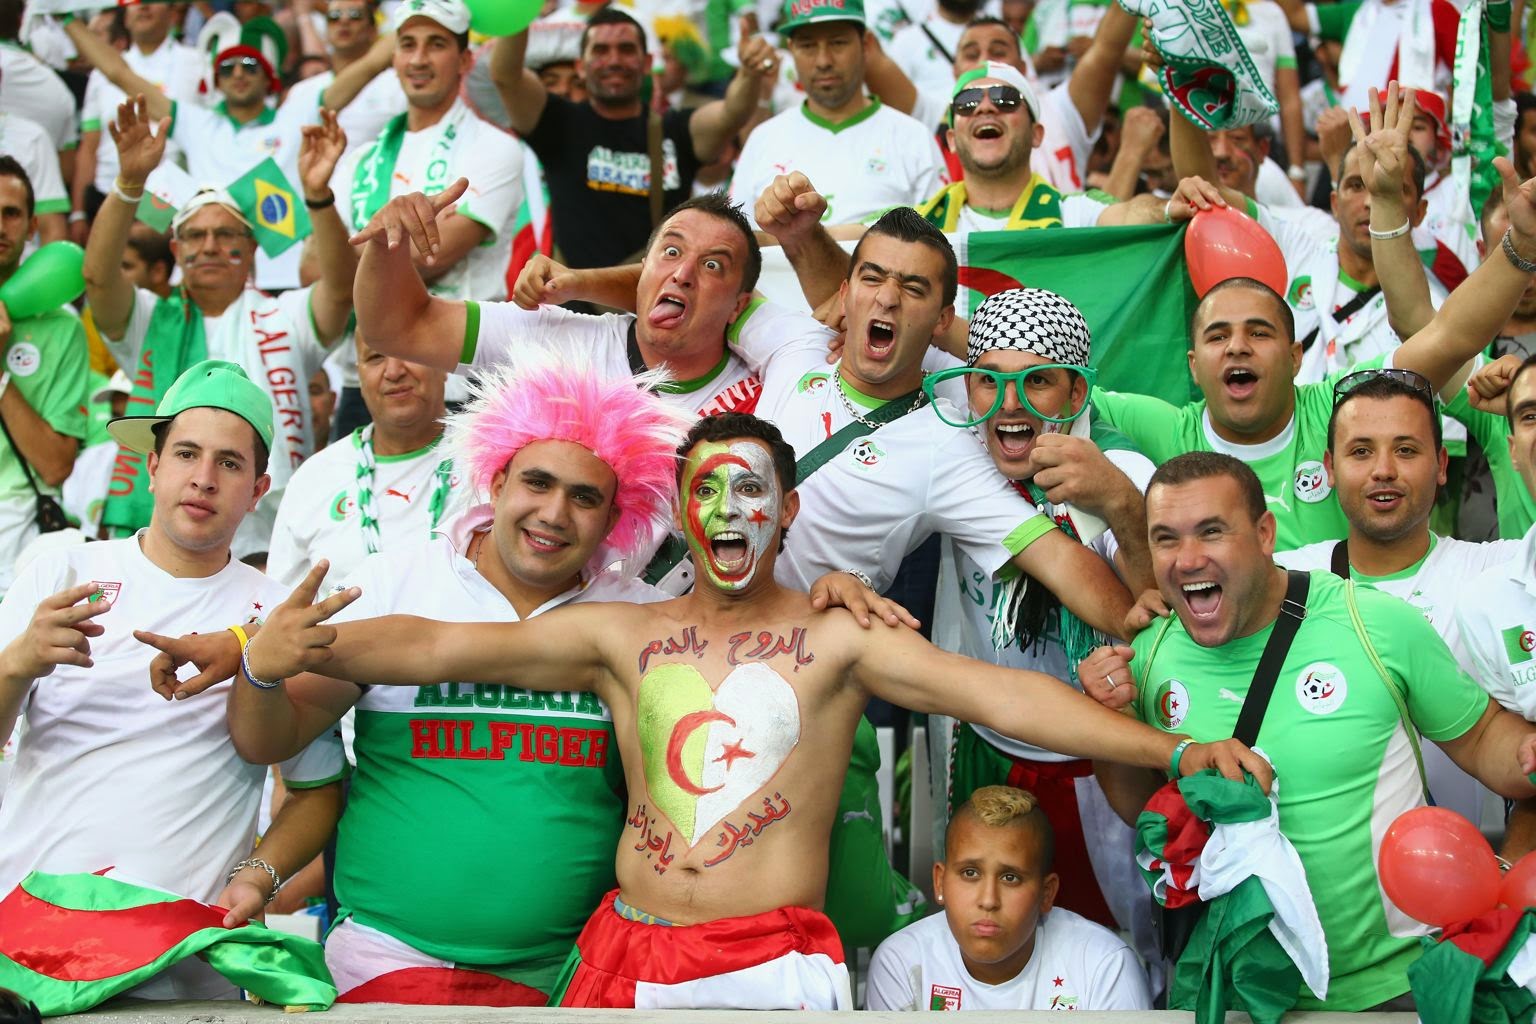 صور المنتخب الوطني الجزائري , منتخب بلد المليون شهيد اجمل الصور